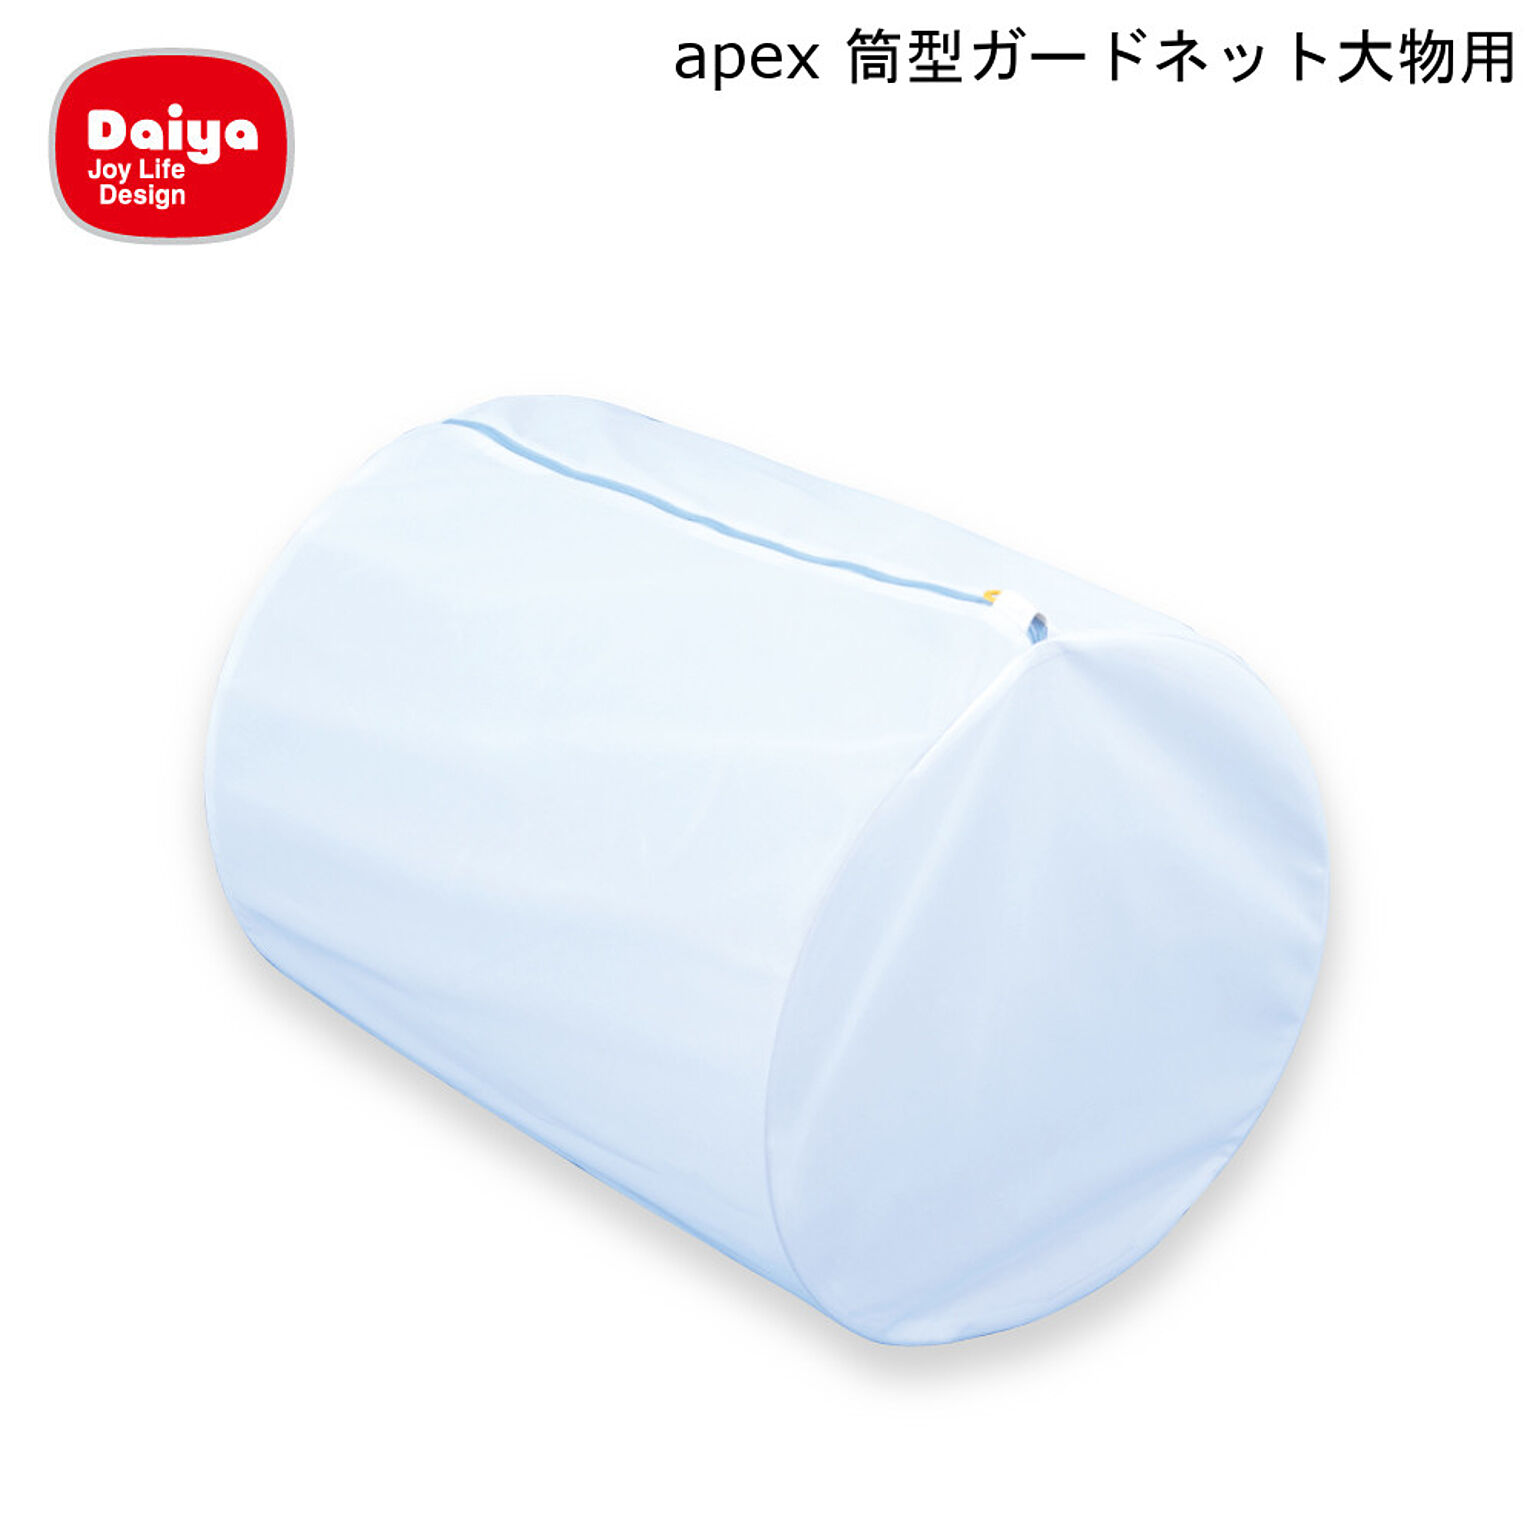 Daiya 大物用ガードネット 筒型